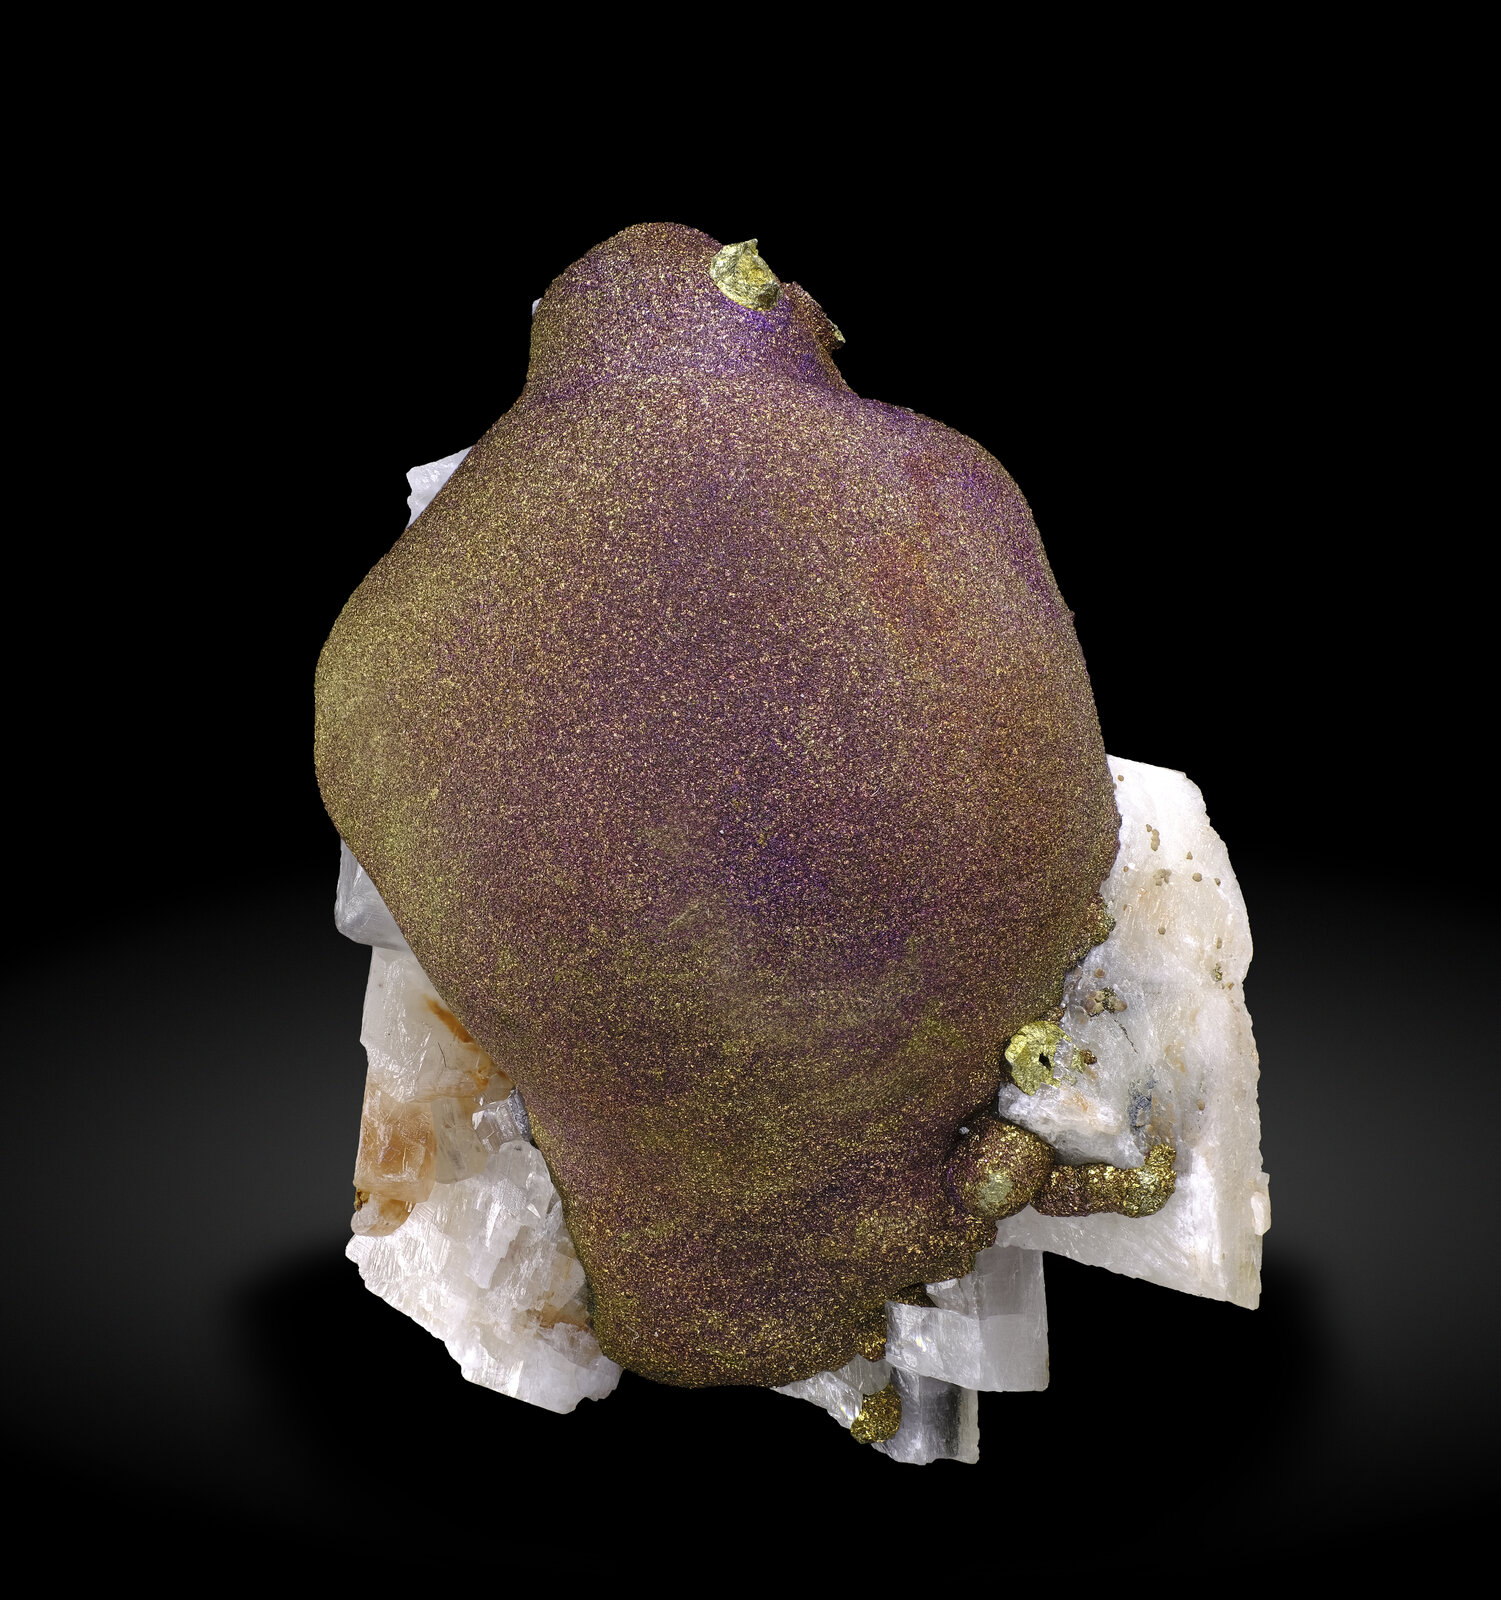 specimens/s_imagesAP1/Chalcopyrite-ETT50AP1_1734_f.jpg